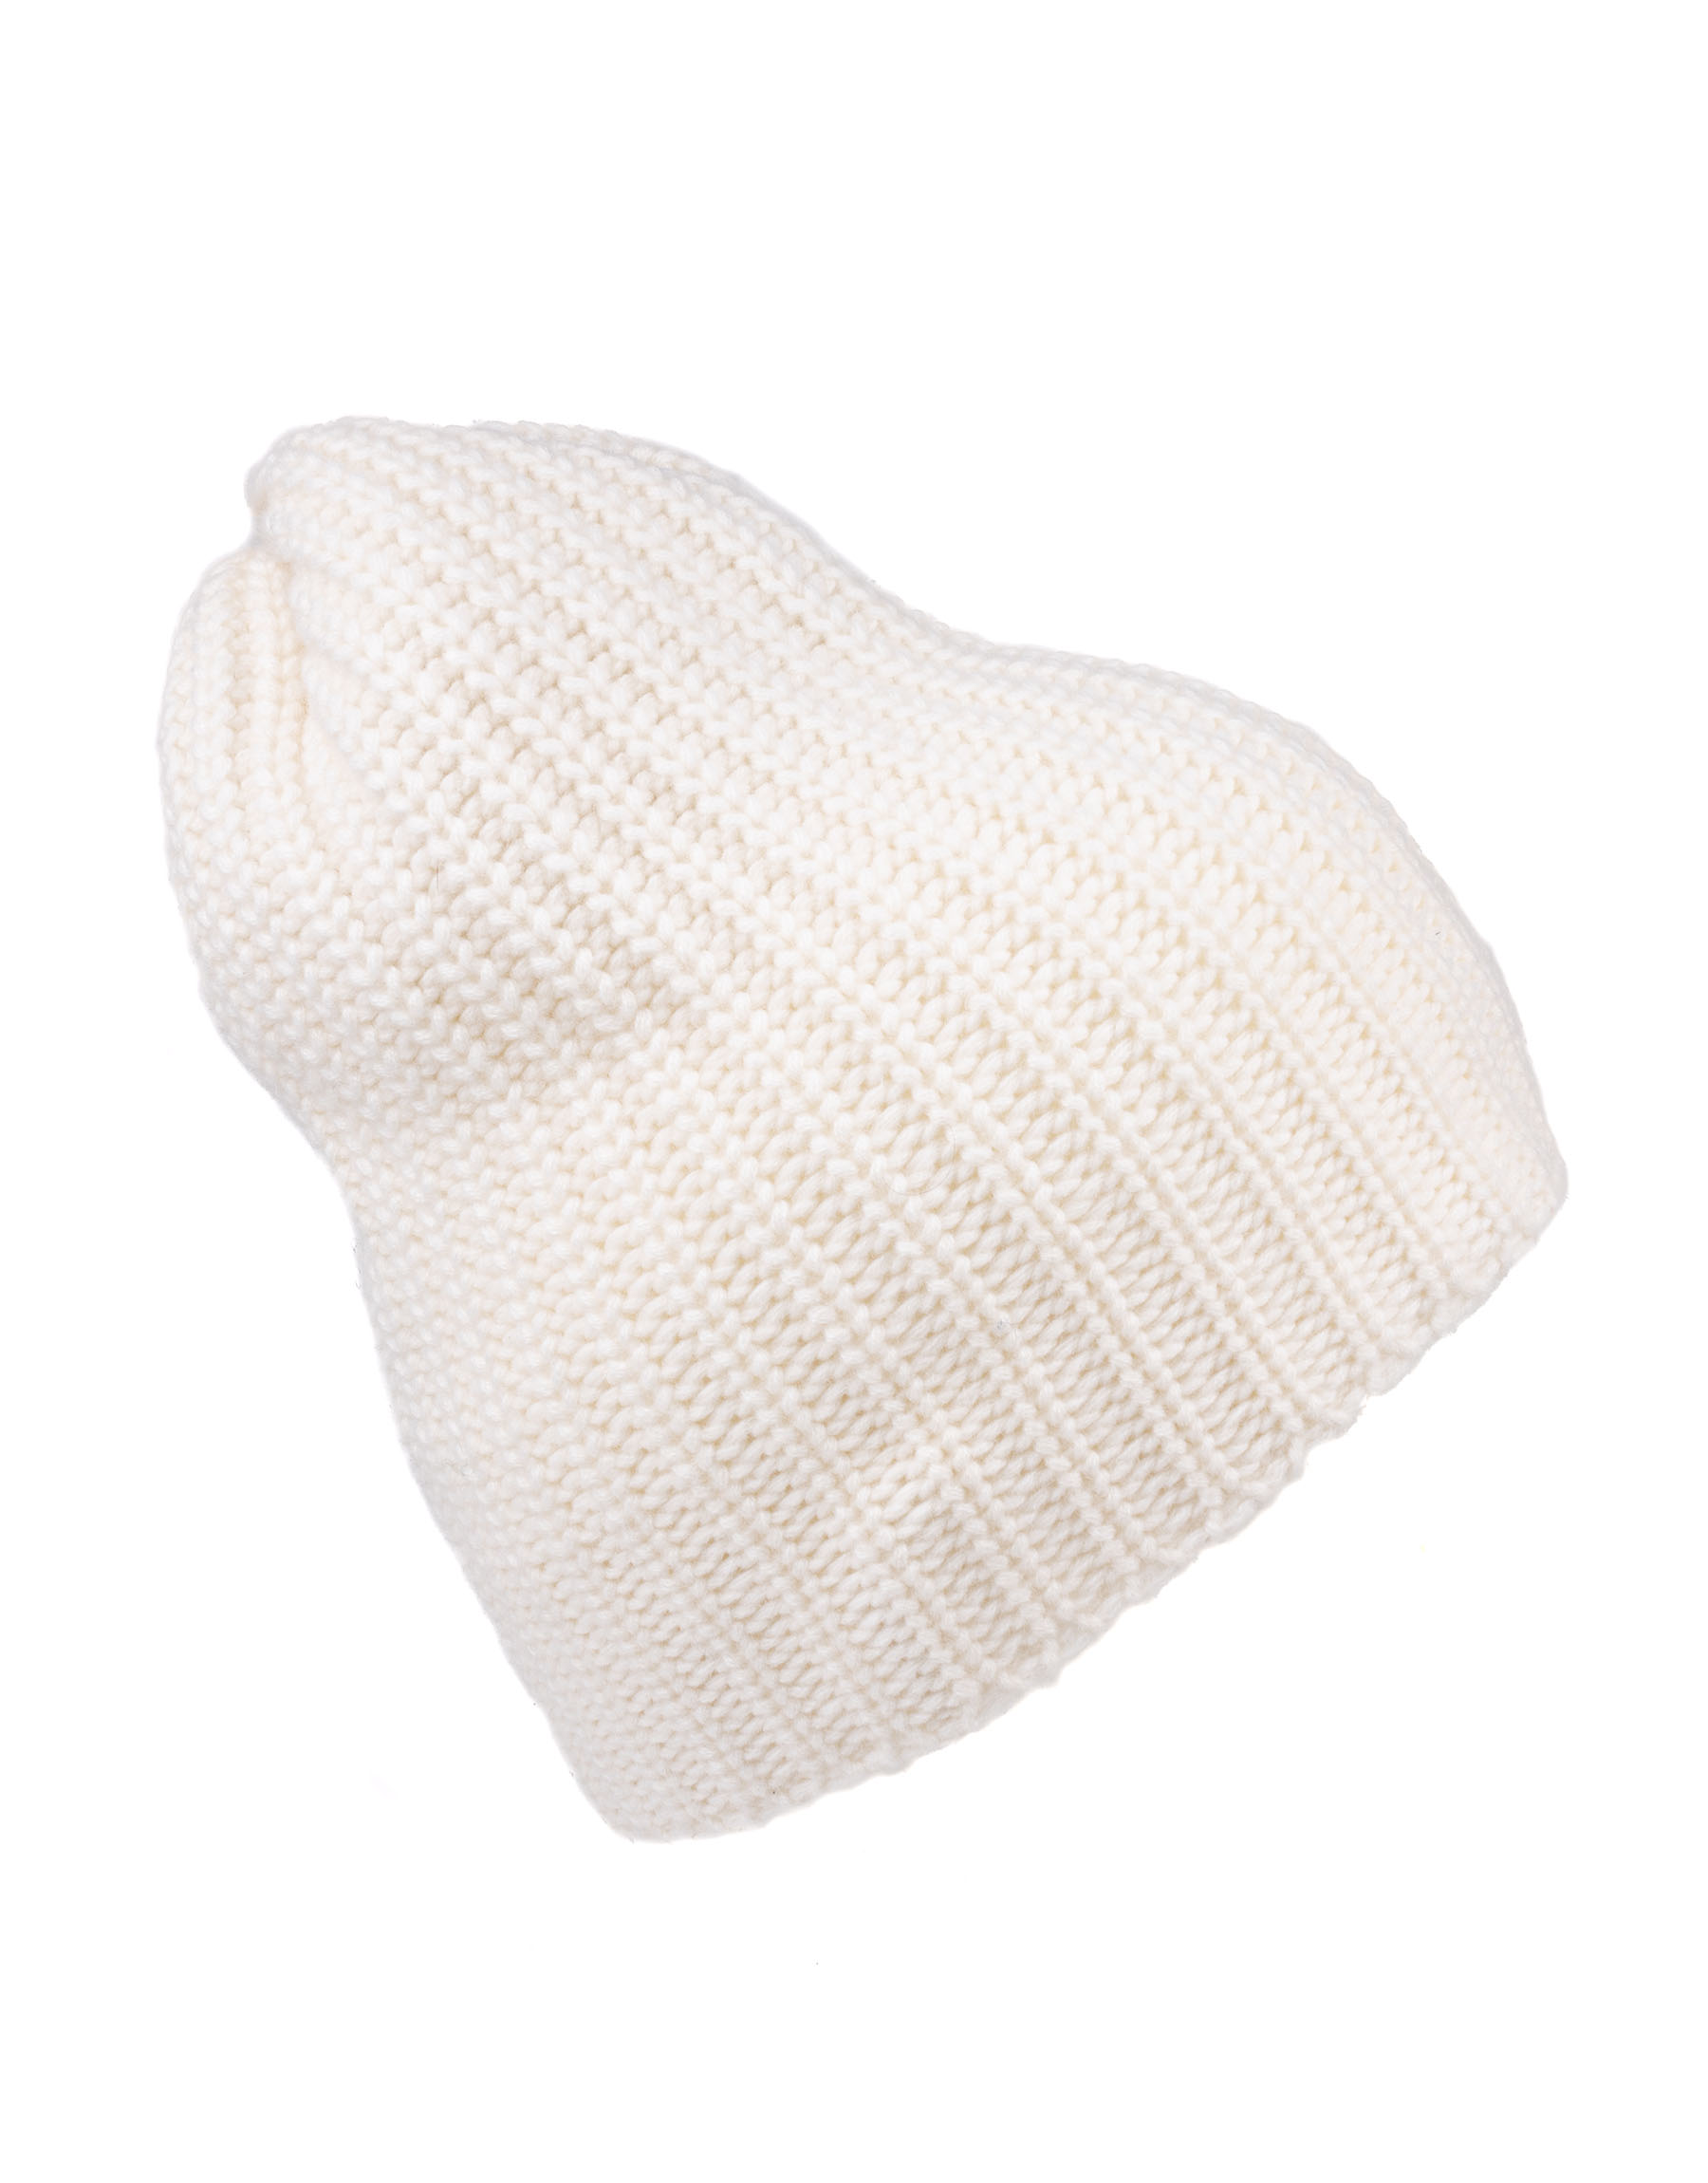 cappello in puro cashmere da donna senza risvolto in maglia perlata di colore bianco panna